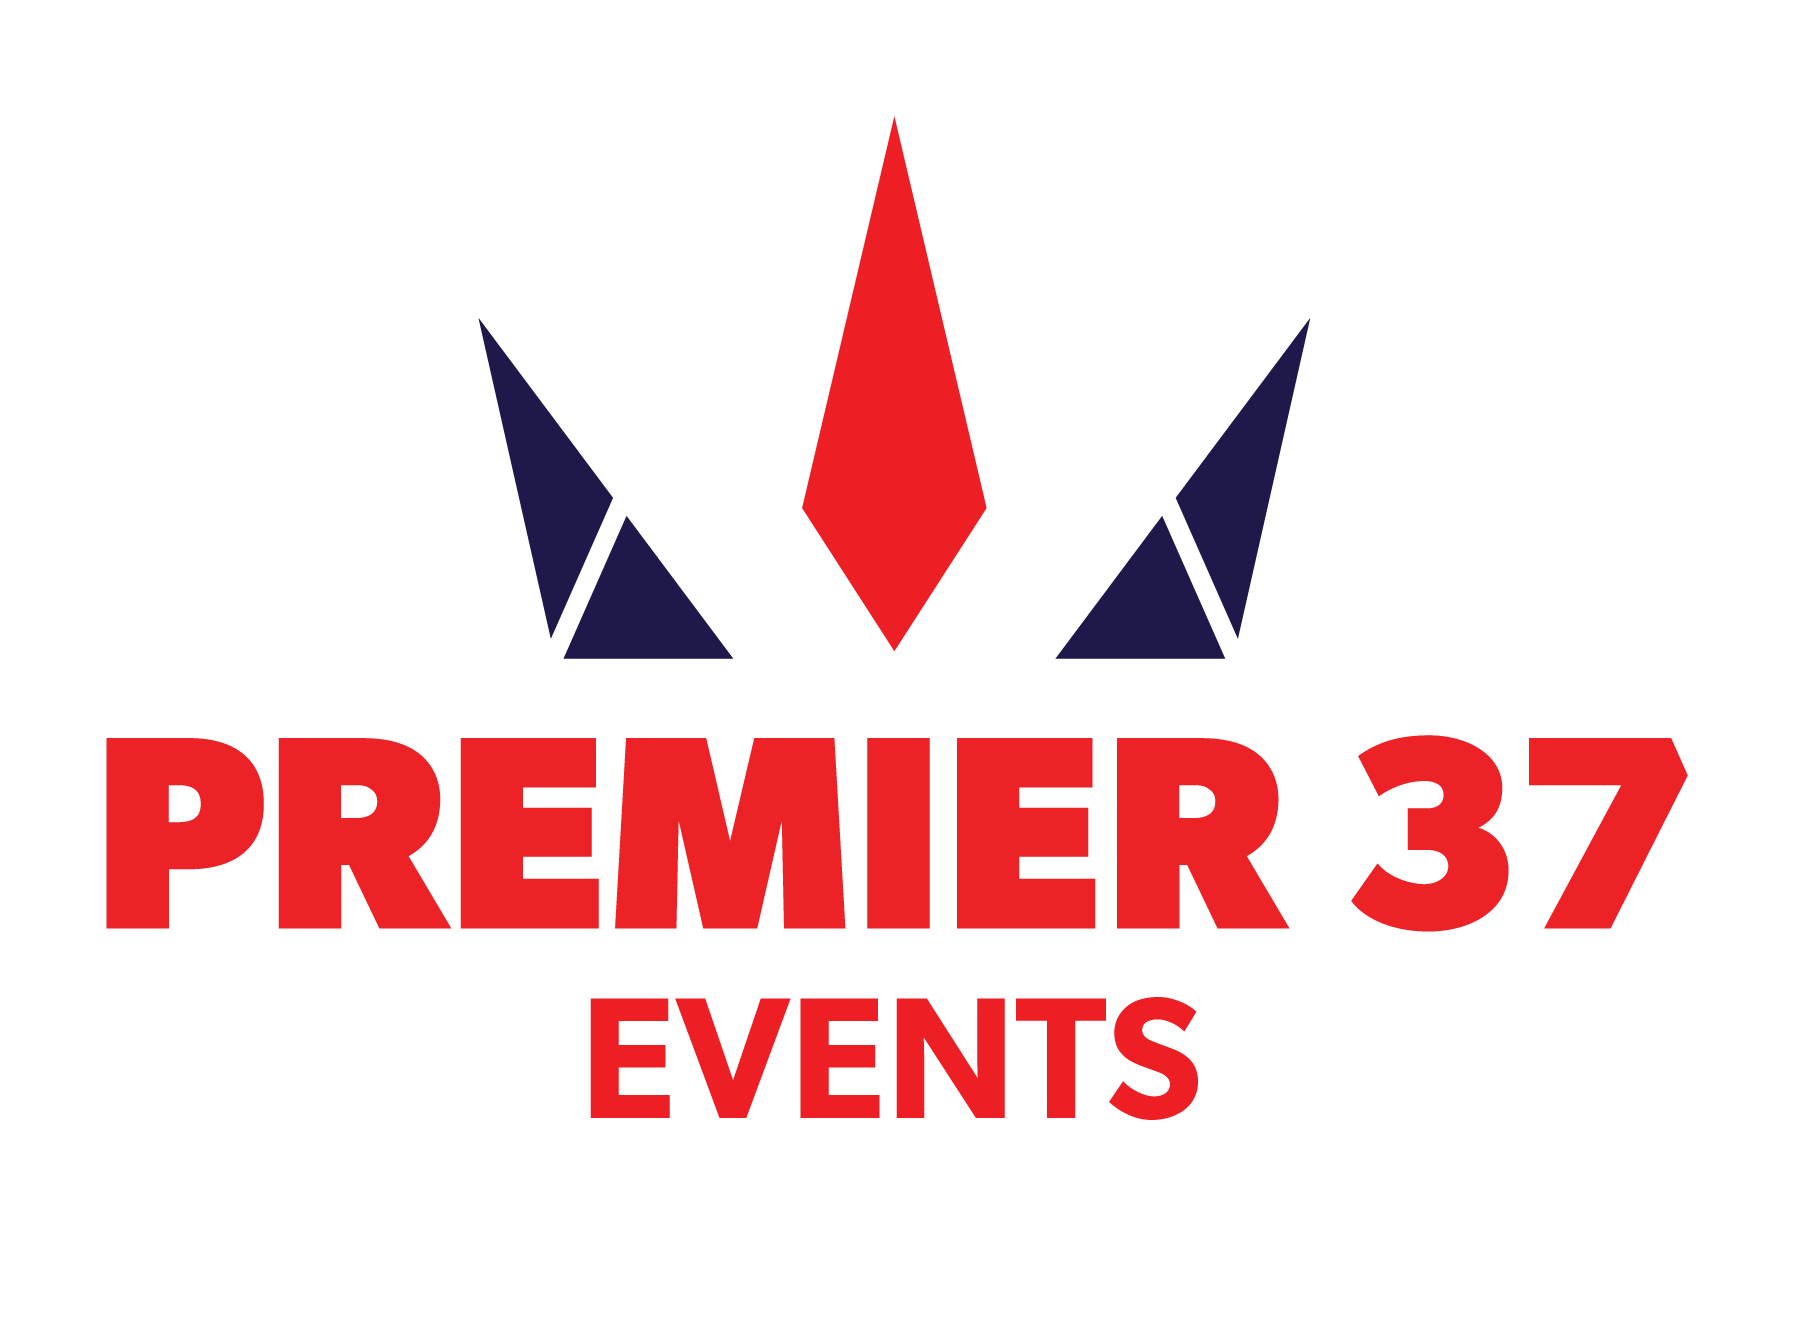 Premier 37 Events logo